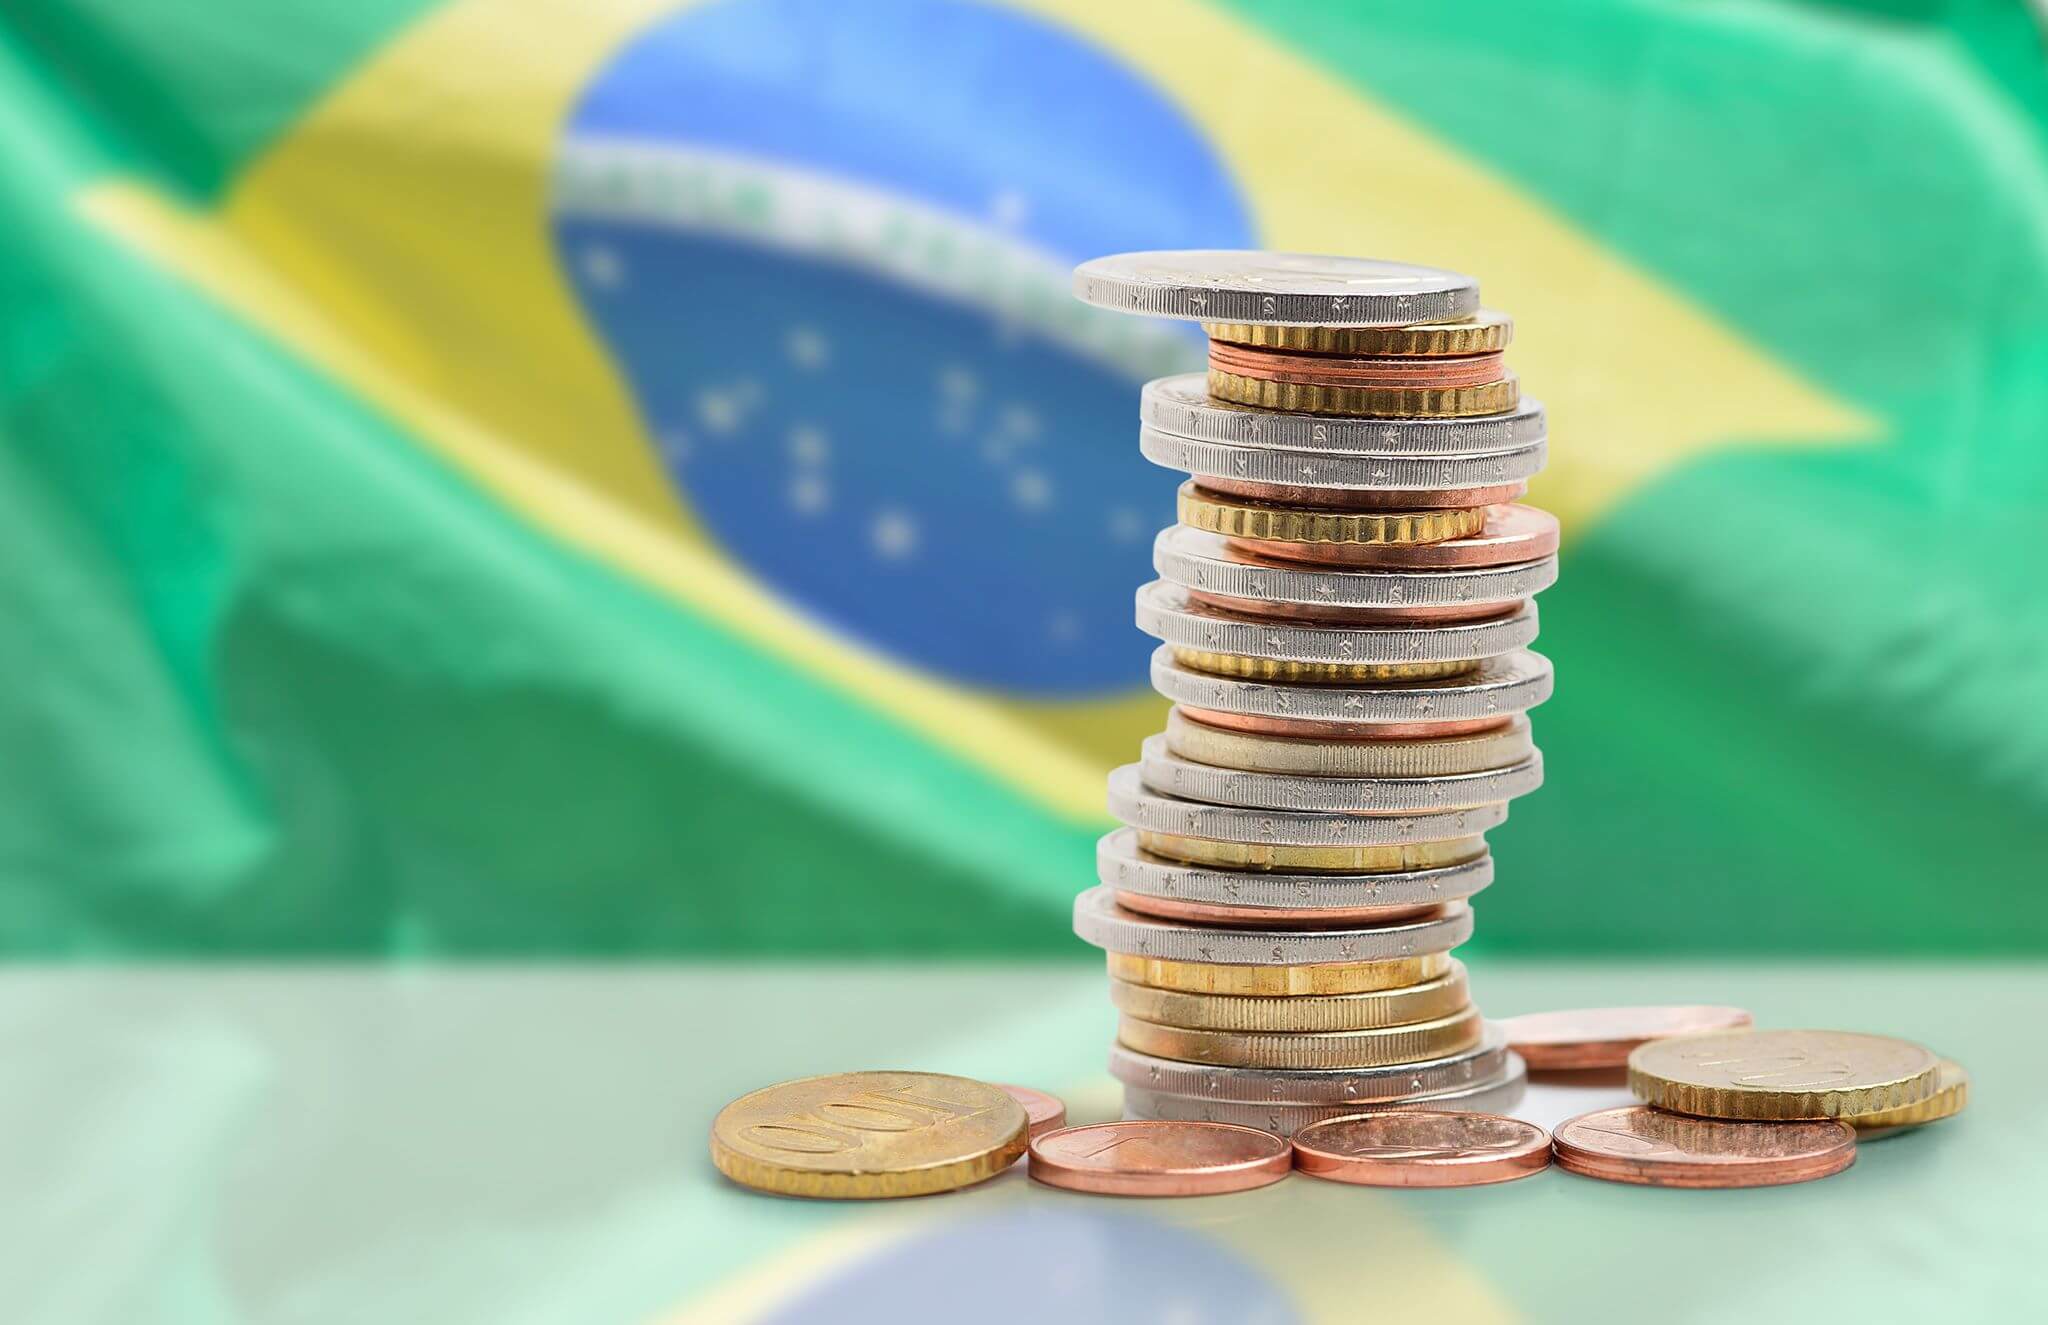 El PIB brasileño crece un 1,0% en el primer trimestre de 2022 impulsado por el sector servicios